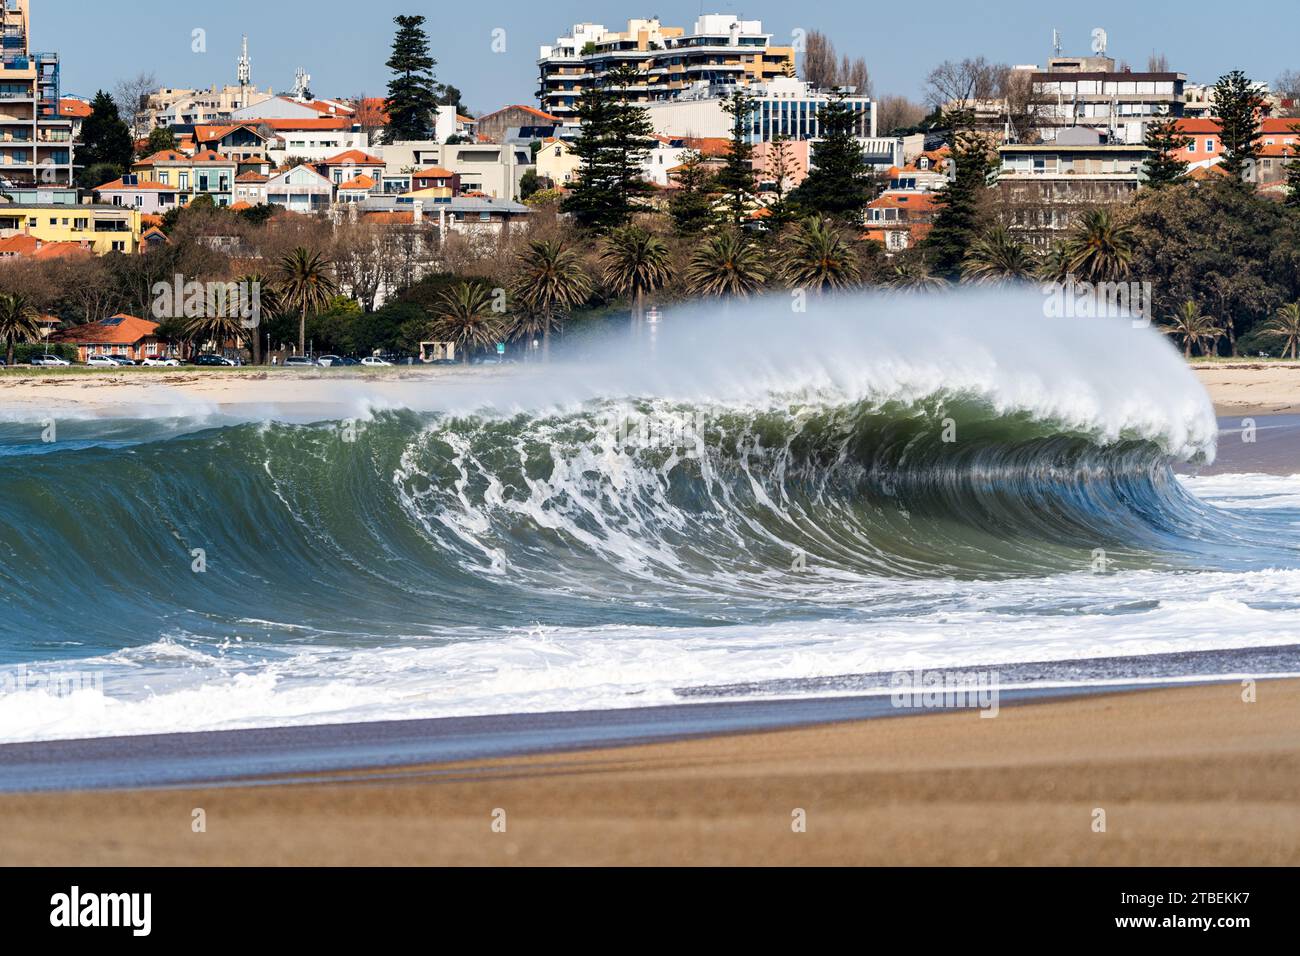 Contrasto urbano-marino: Un'onda dominante è al centro della scena, che si fonde perfettamente con lo skyline urbano della città di Porto, creando una composizione unica. Foto Stock